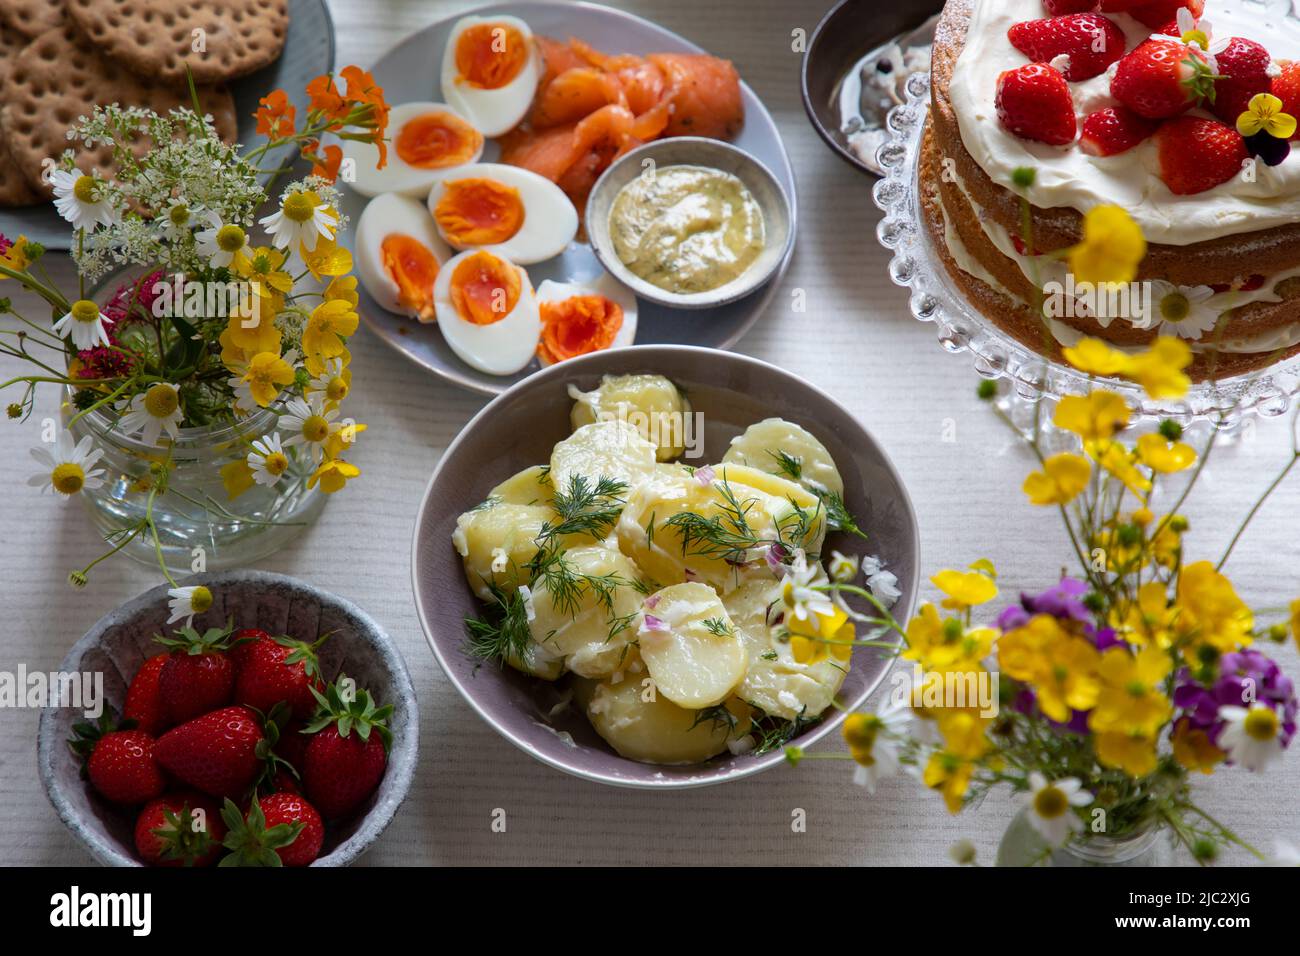 Comida escandinava de mediados de verano con pastel de fresa y crema, ensalada de patata, salmón y huevos Foto de stock